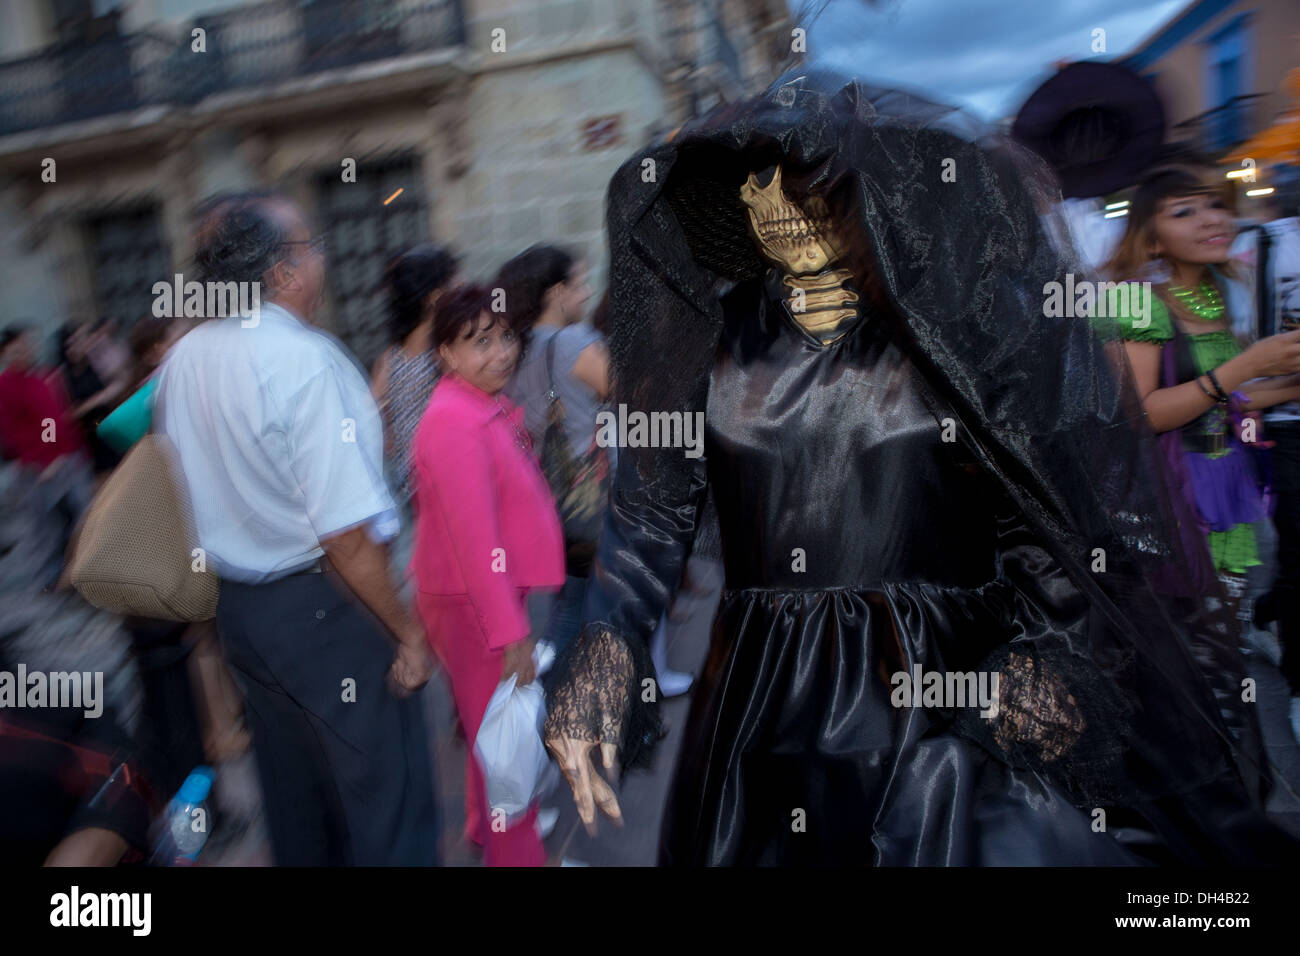 Danse de fêtards dans les rues en costumes traditionnels au début de la Journée de la fête des morts connus en espagnol comme d'un de muertos 30 octobre 2013 à Oaxaca, au Mexique. Banque D'Images